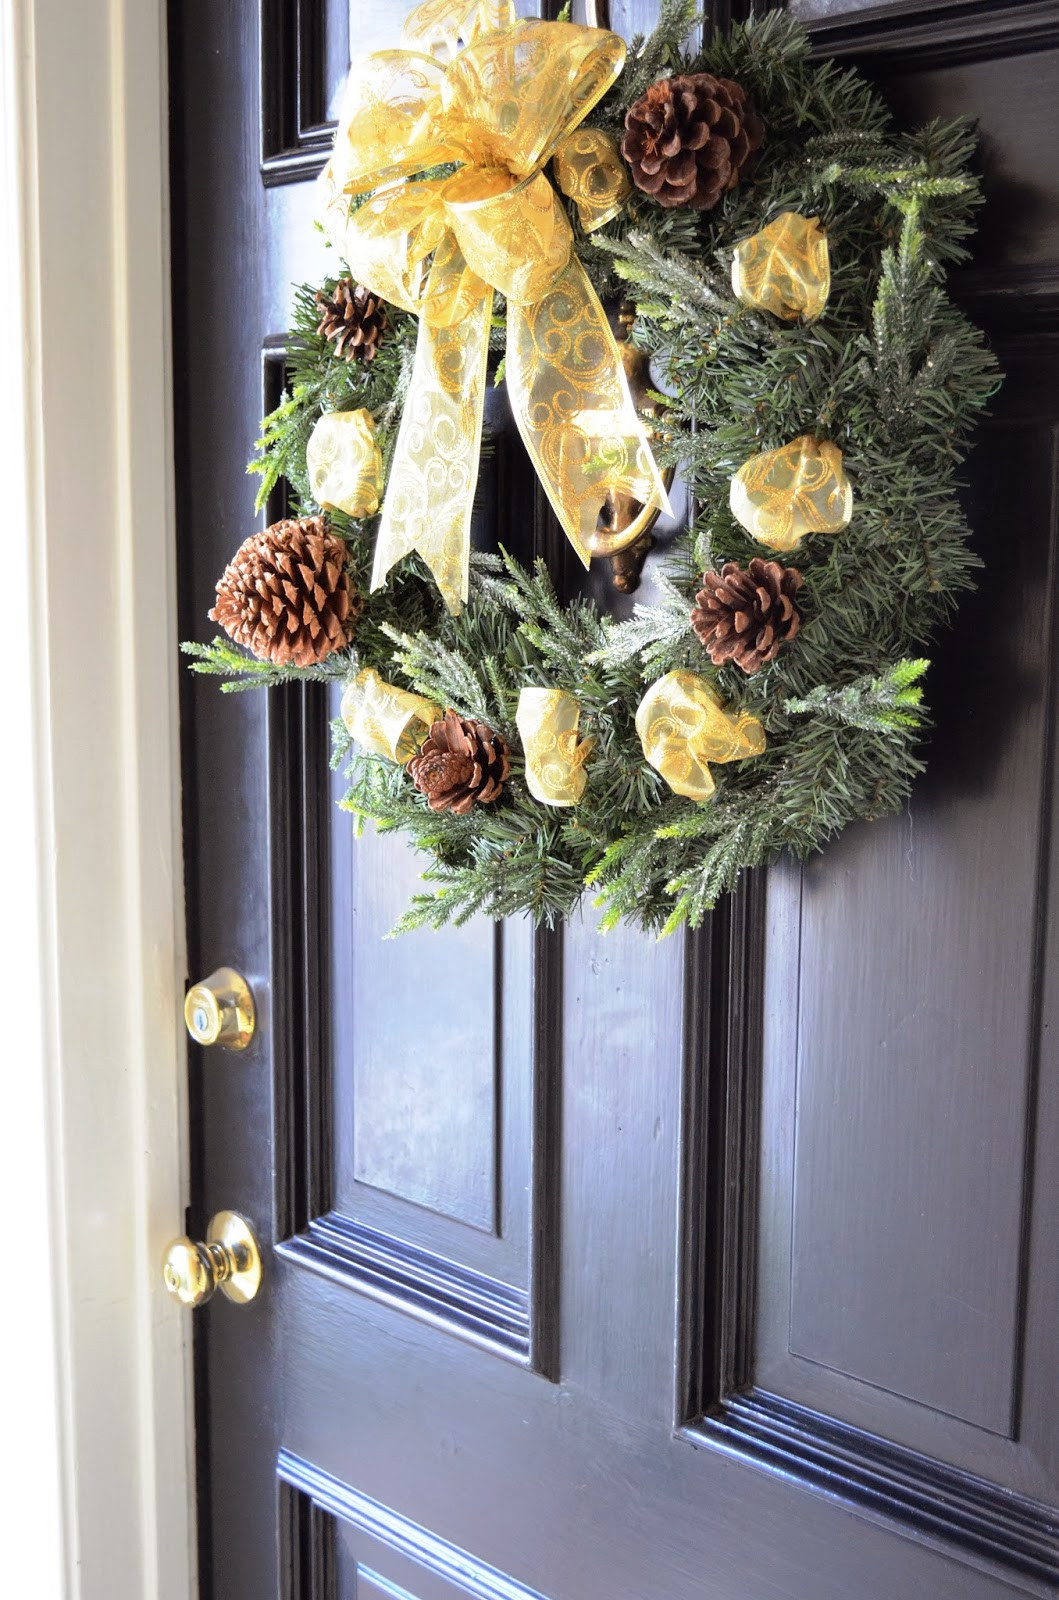 Best ideas about DIY Door Wreaths
. Save or Pin Beckabella Style Inspirations DIY Front Door Wreath Now.